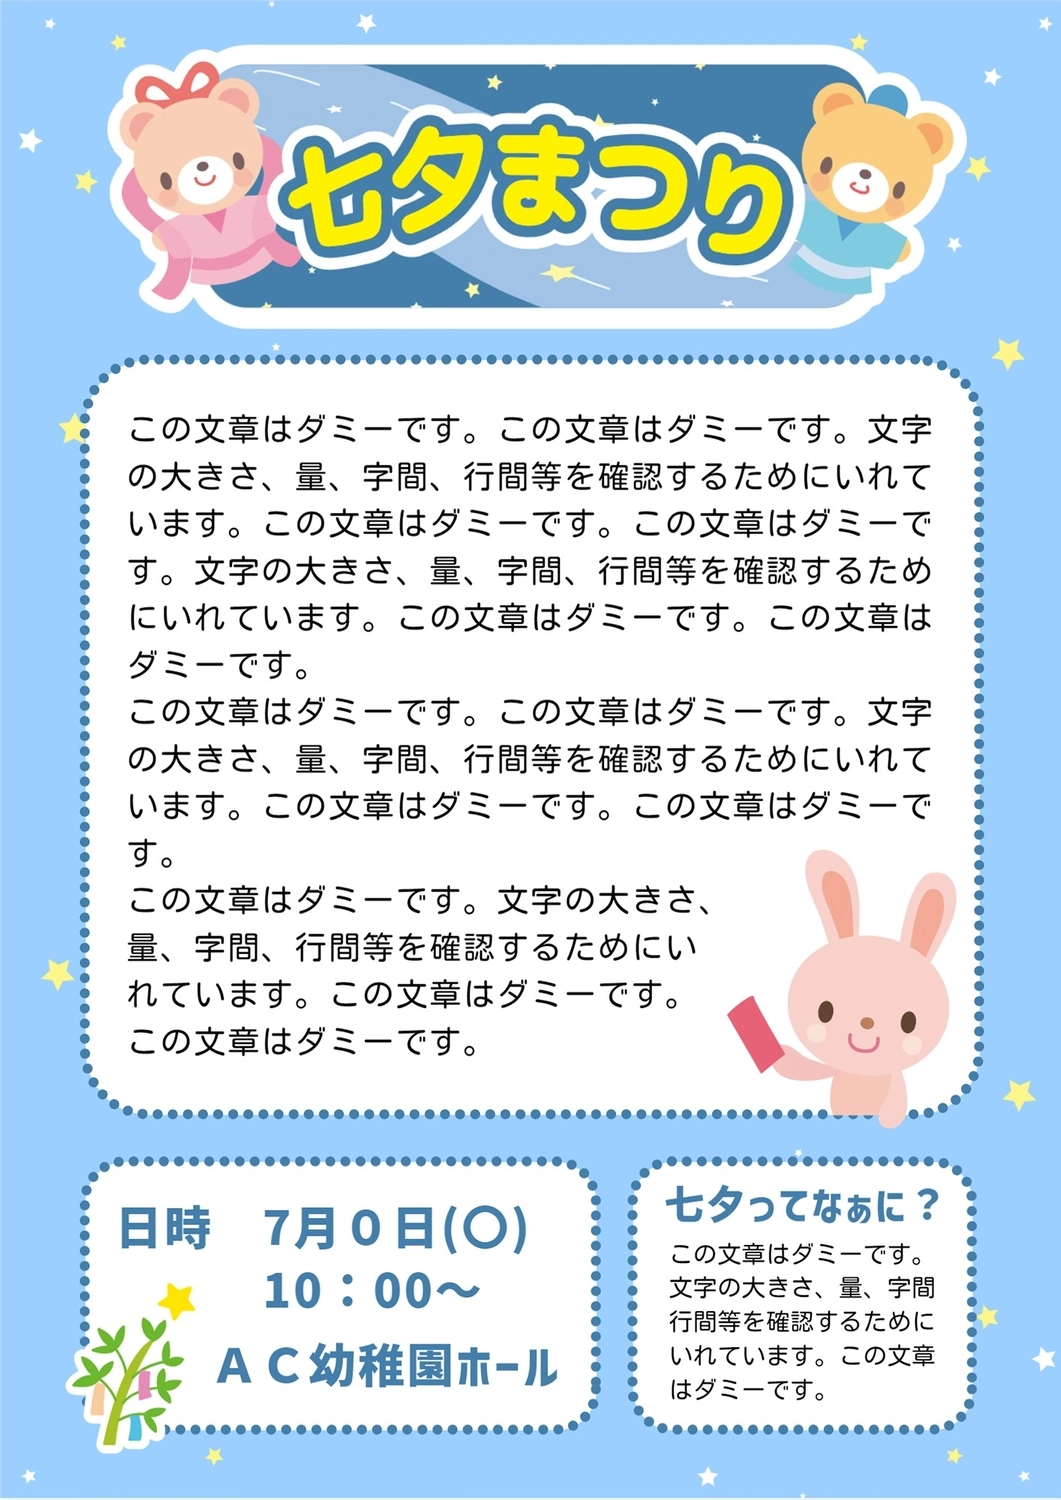 七夕まつりのおたより, horizontal writing, Orihime, Hikoboshi, News template